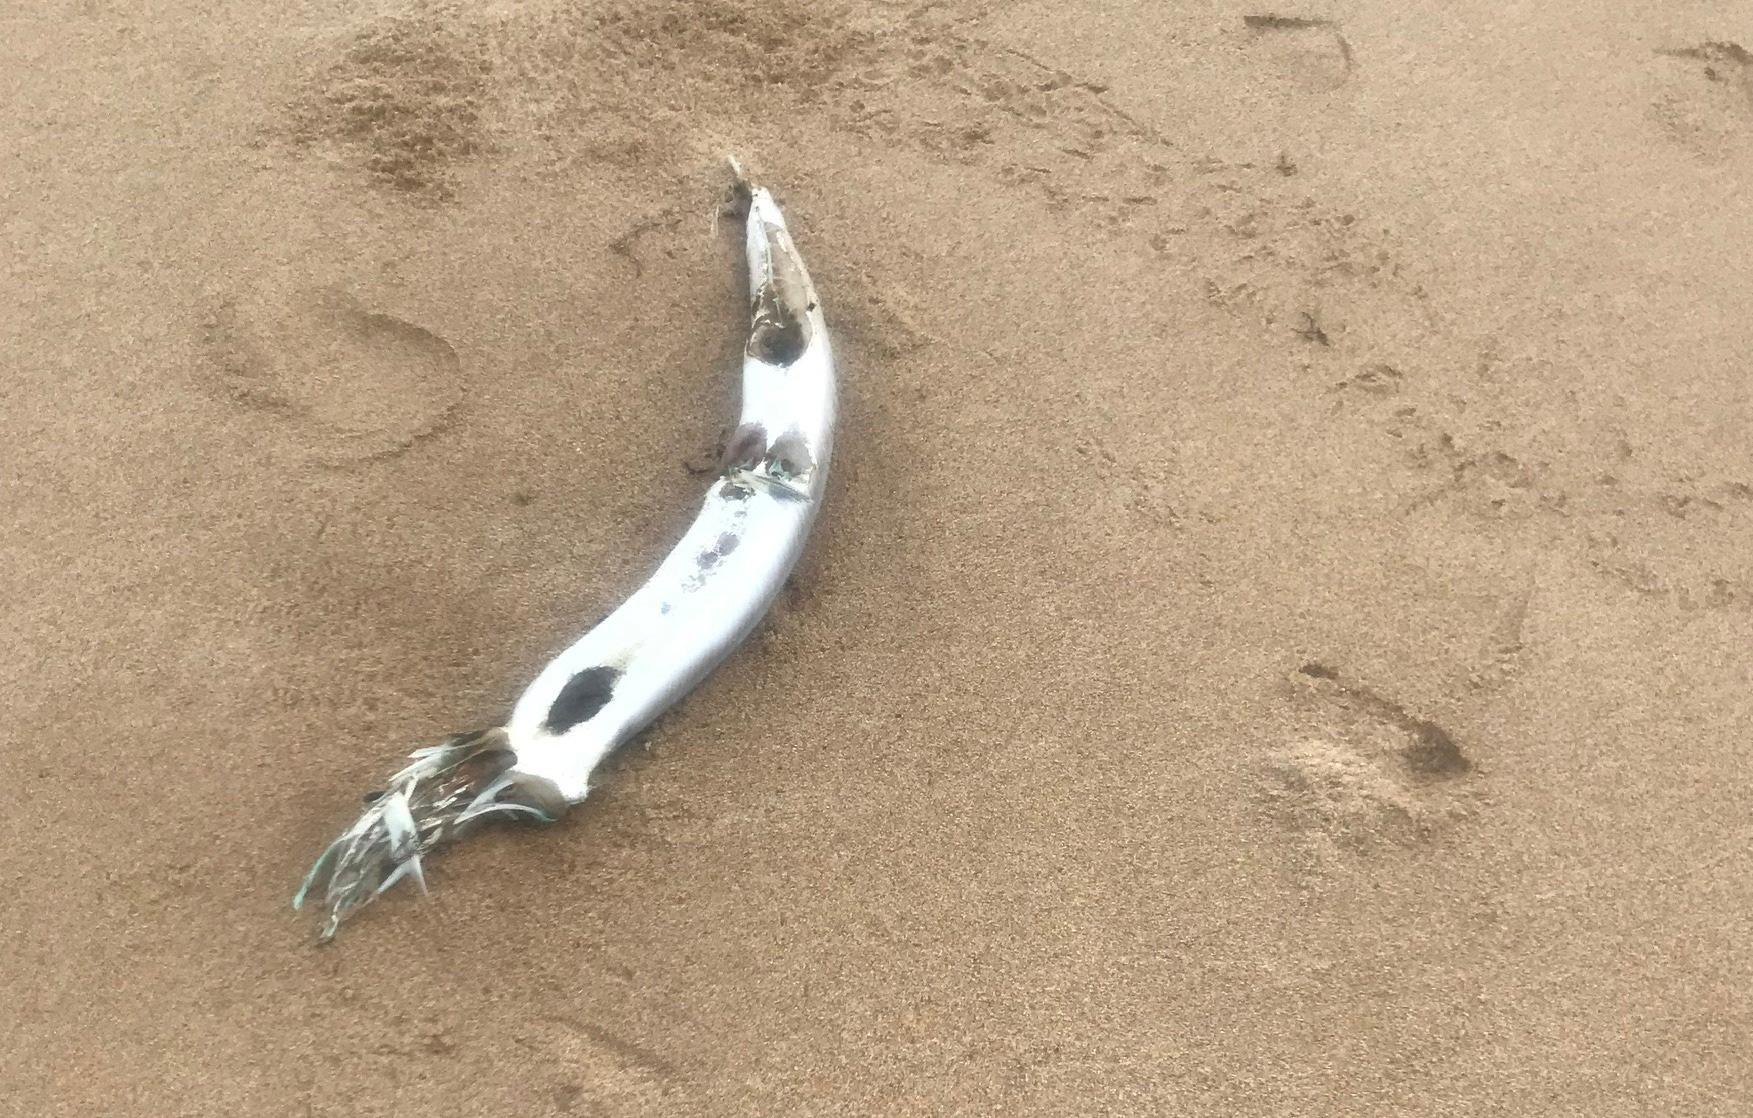 Dân hoang mang khi cá chết hàng loạt, nằm rải rác dọc theo bãi biển - Ảnh 7.